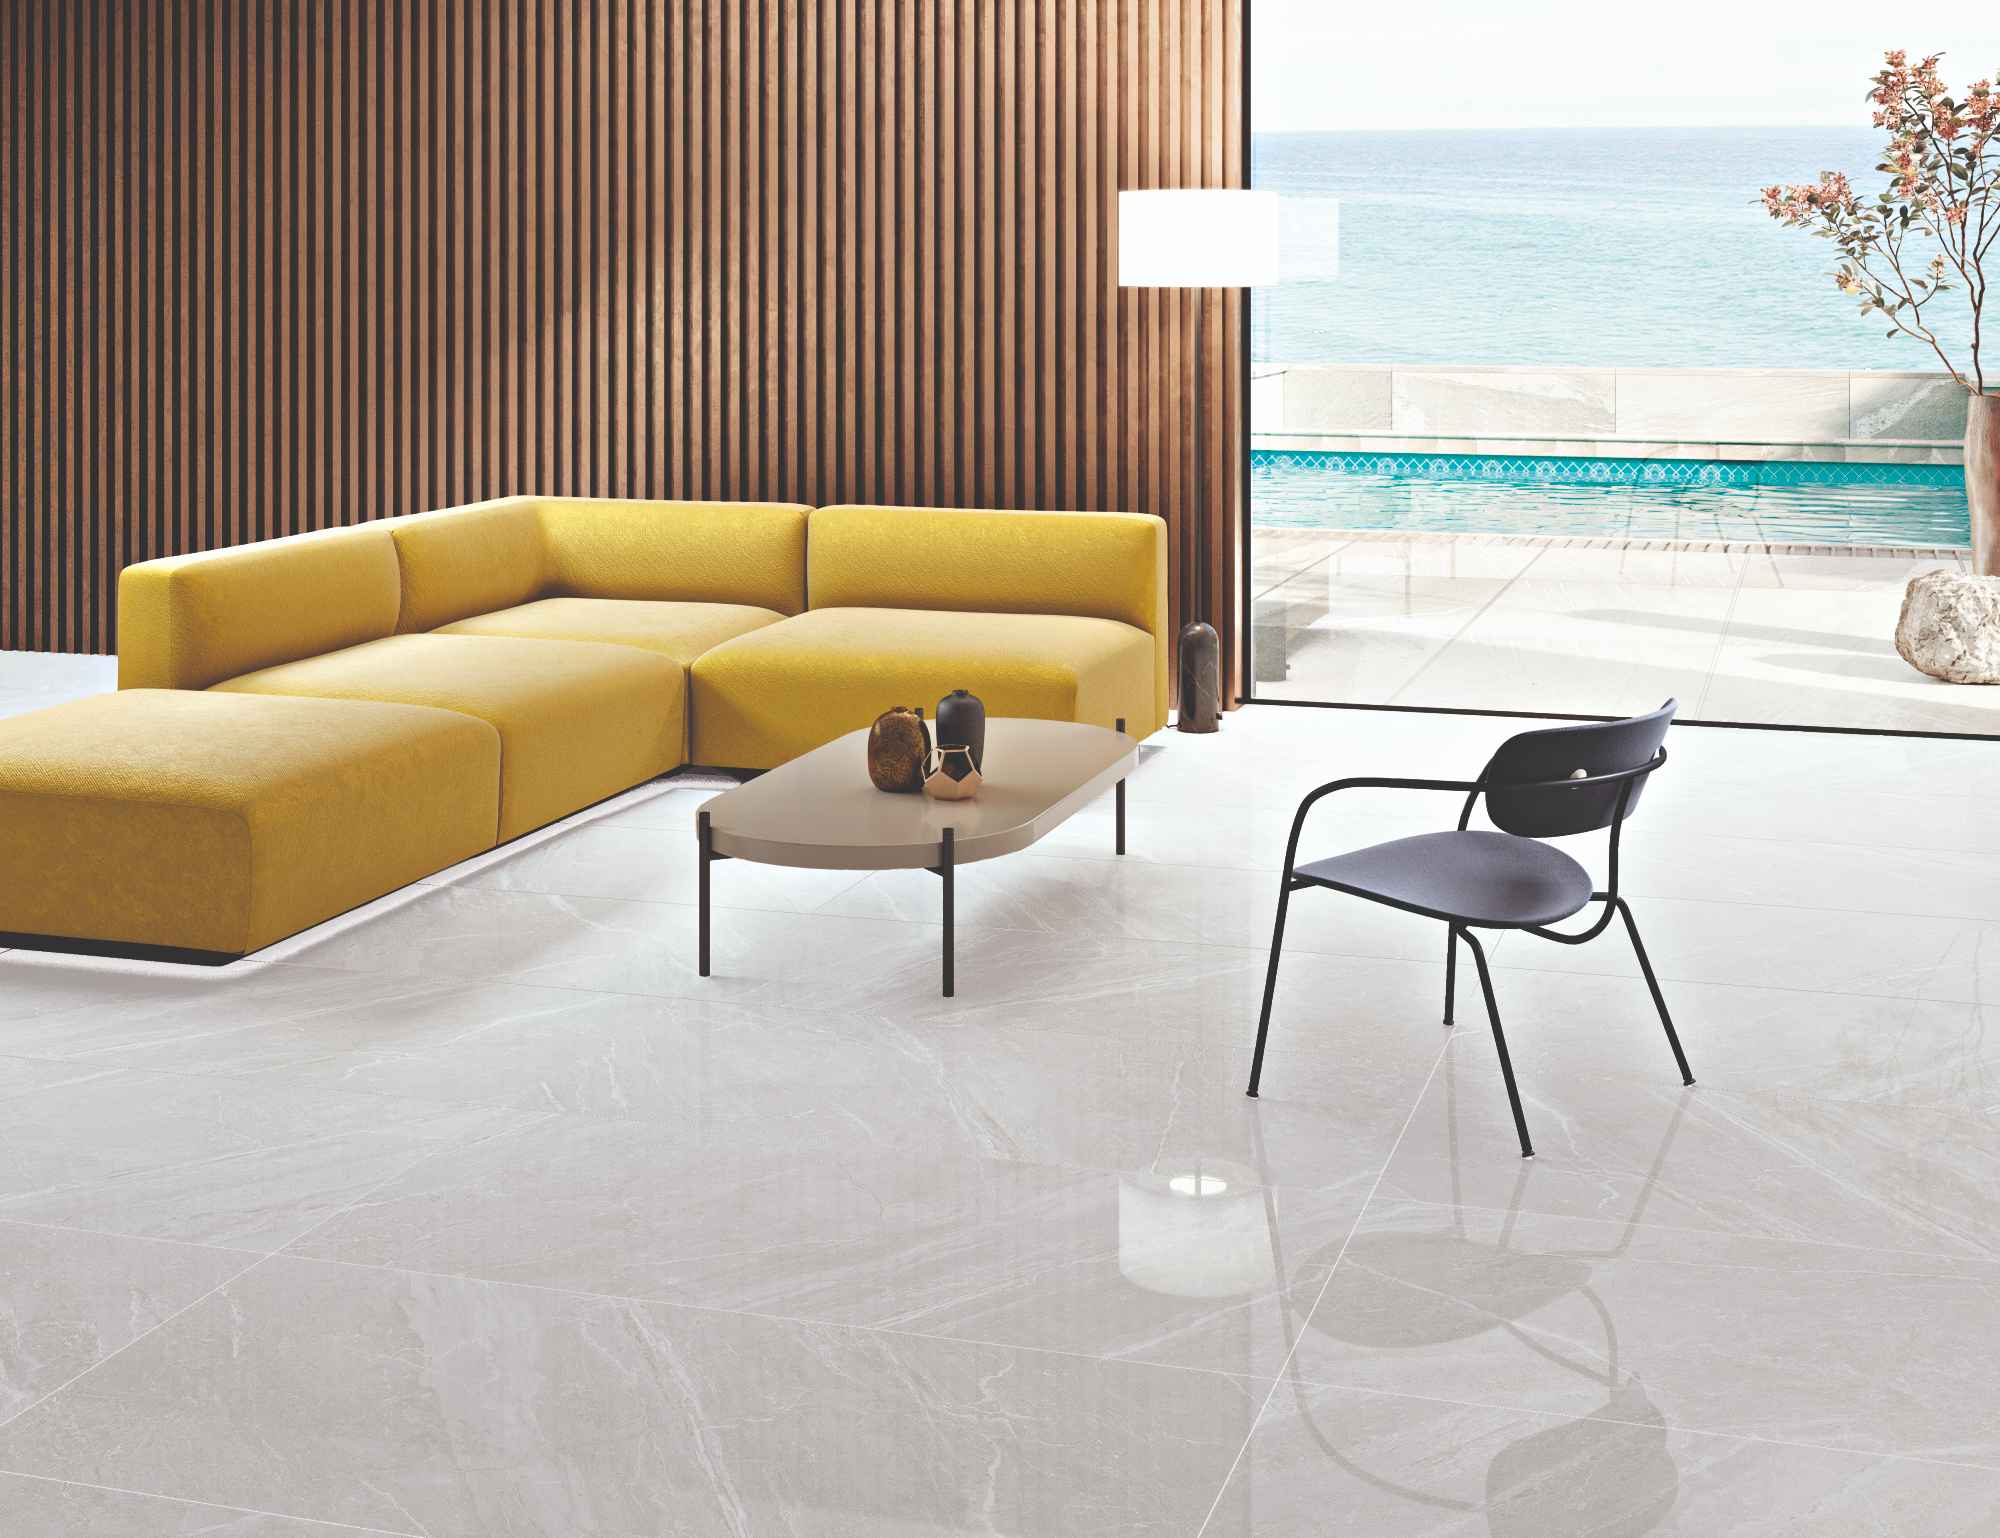 Salon z podłogą wyłożoną jasnymi płytkami imitującymi kamień w połysku z kolekcji Mainstone z żółtą kanapą, czarnym krzesłem i stolikiem